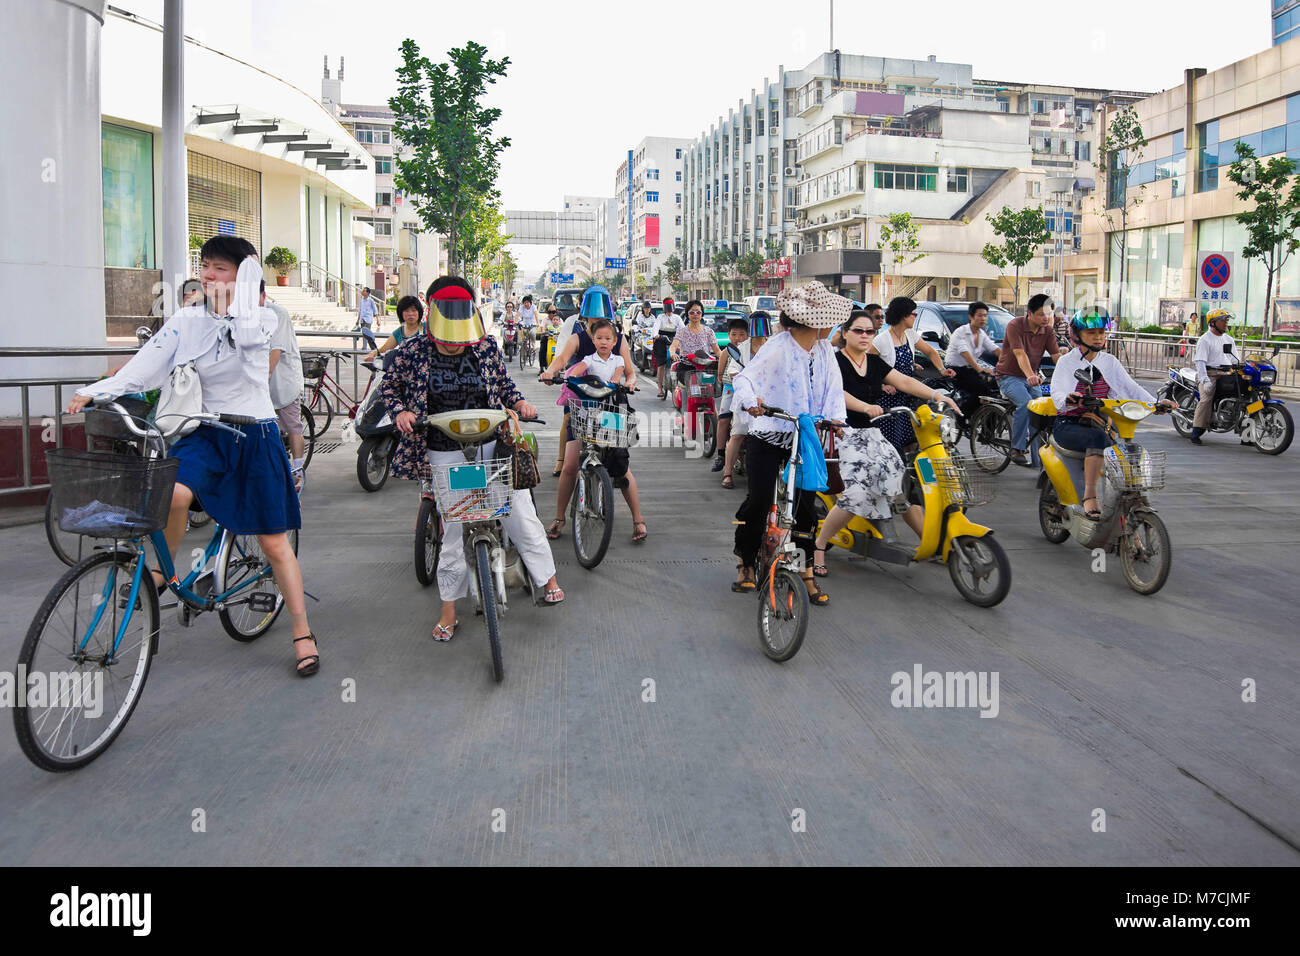 China, Anhui, Hefei, street scene Stock Photo